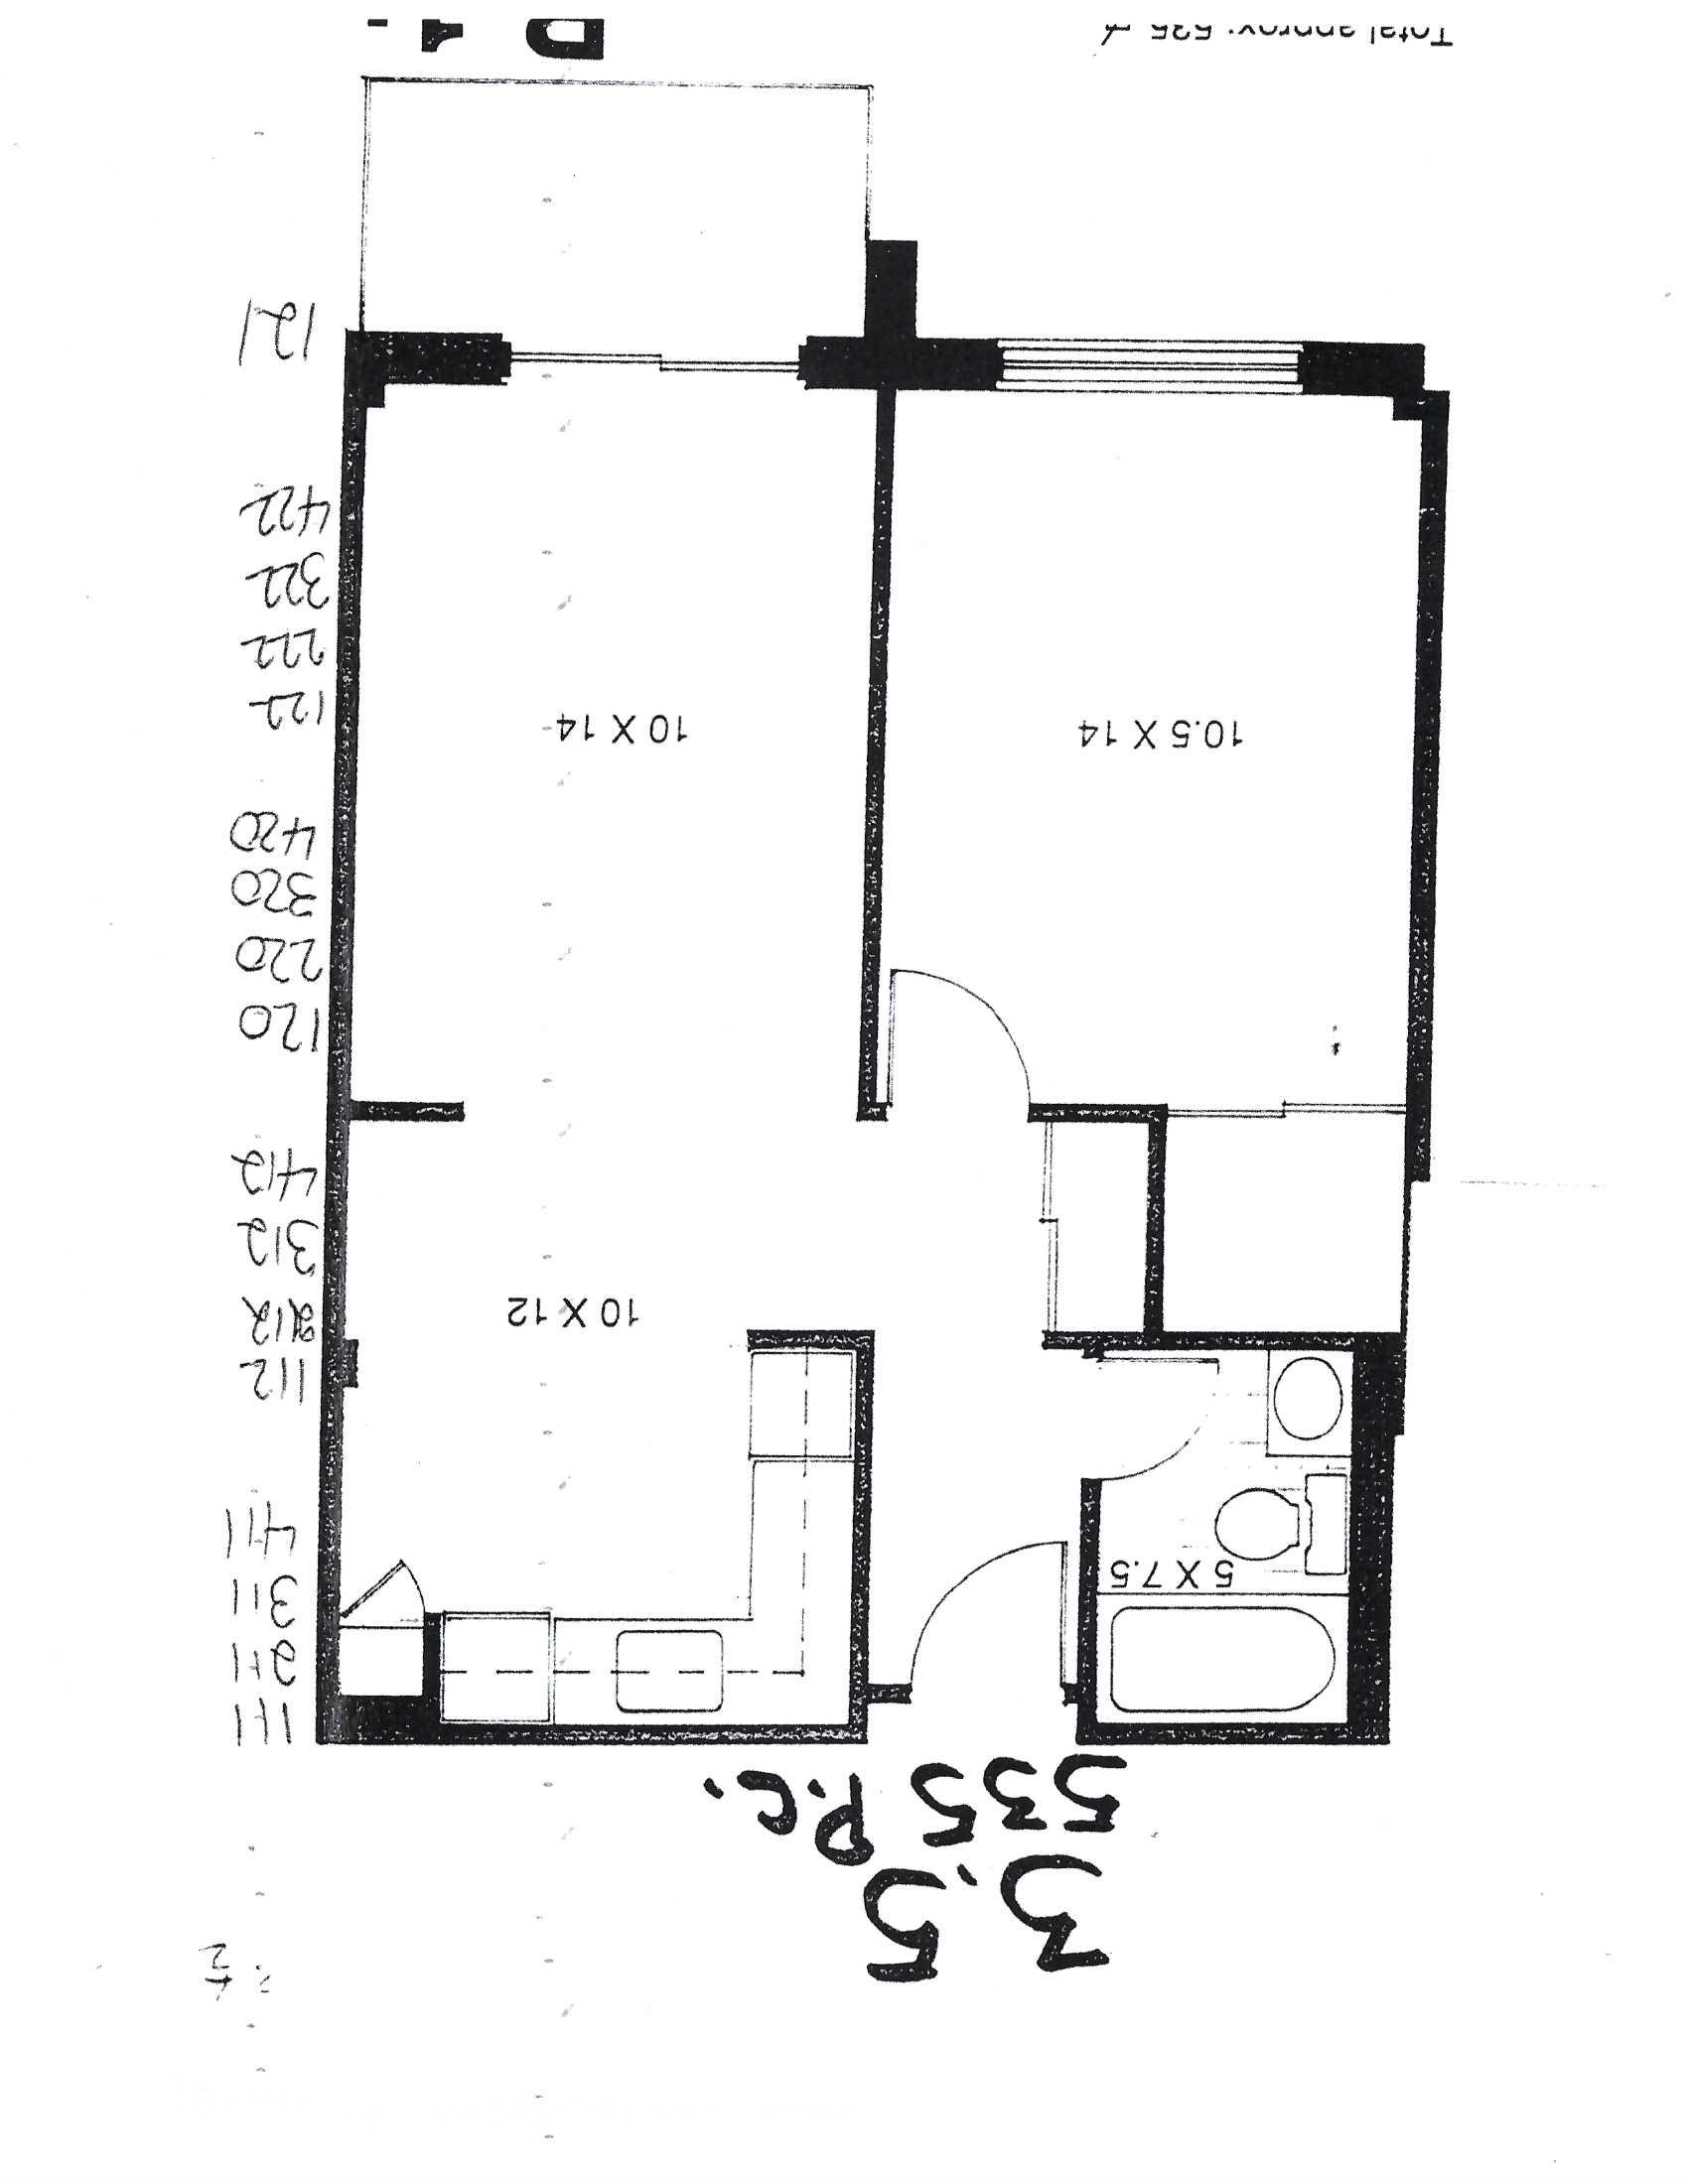 1 bedroom Apartments for rent in Pointe-aux-Trembles at Habitations de la Rousseliere - Floorplan 01 - RentQuebecApartments – L1921